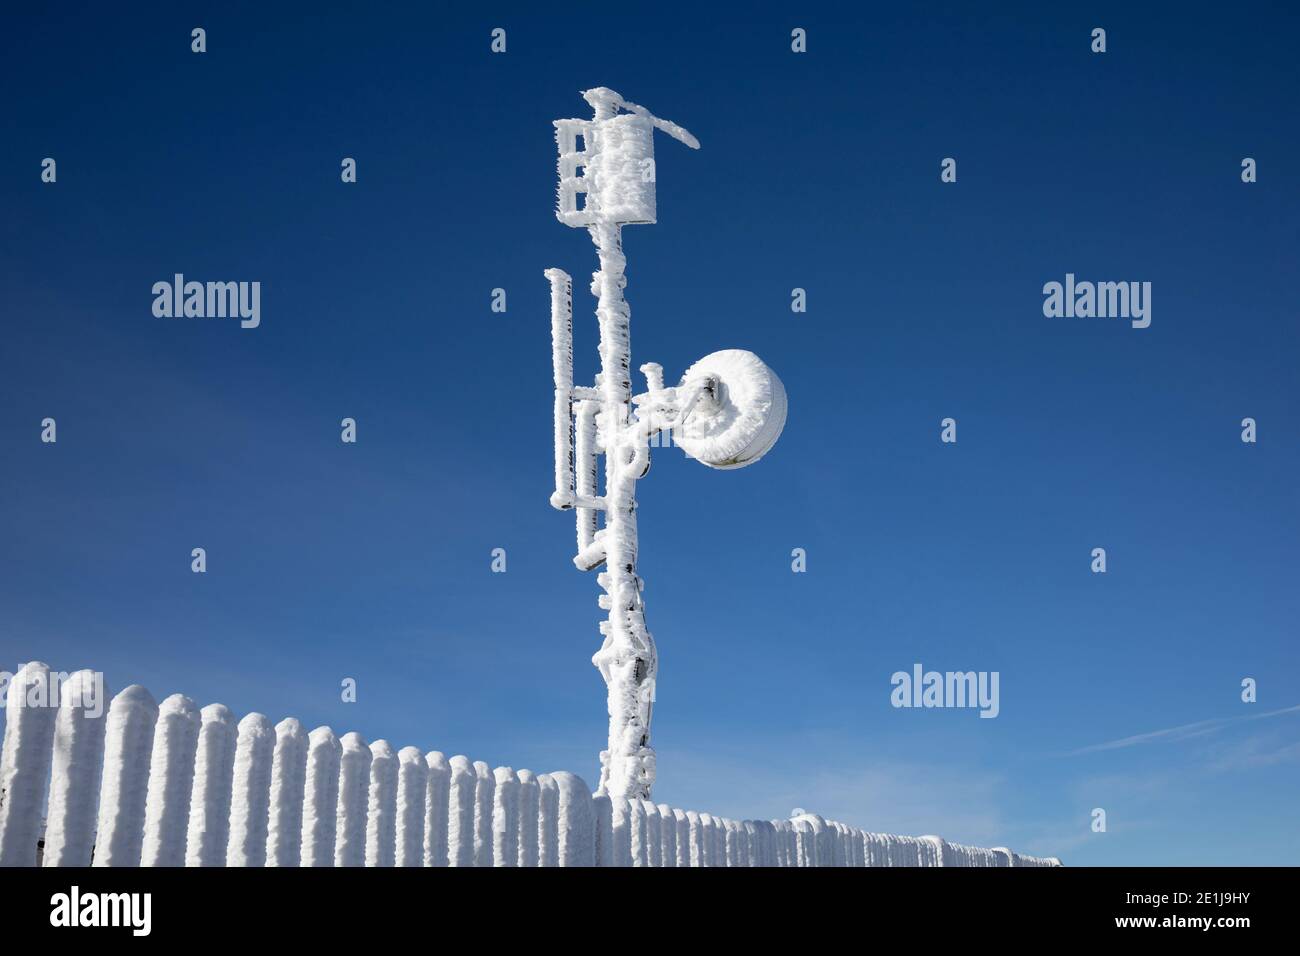 Torre meteorologica con apparecchiature di misurazione, antenna satellitare. Il dispositivo è coperto da neve surgelata, ghiaccio e rime in winte freddo e gelo Foto Stock